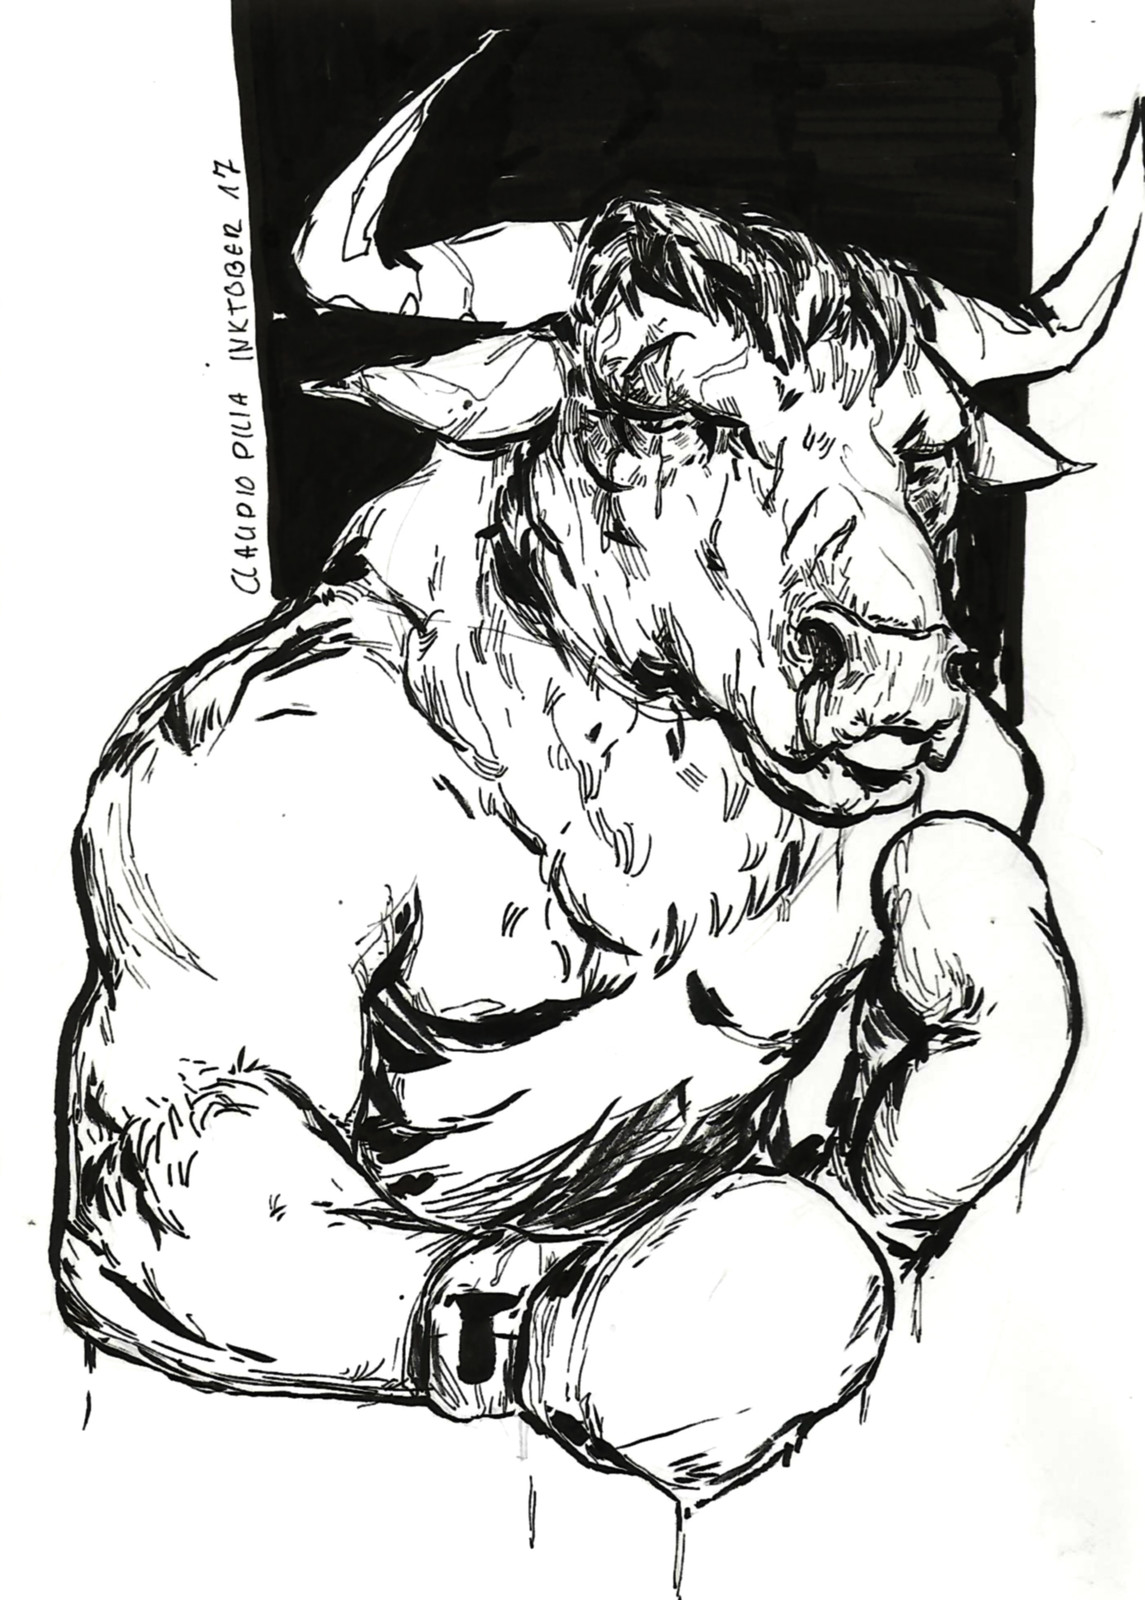 Inktober 17. Swollen Bull